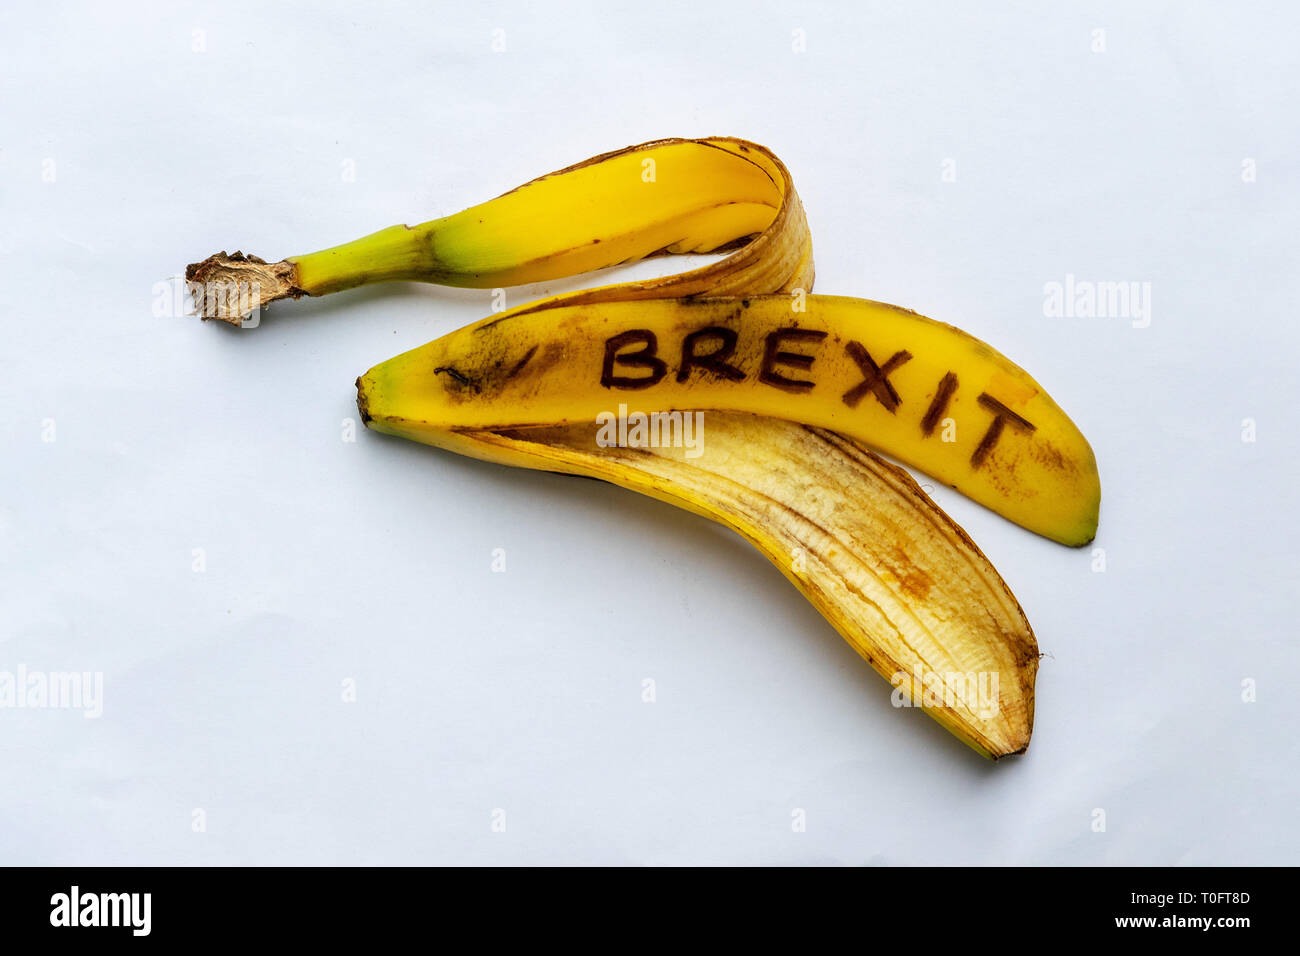 Una buccia di banana, che rappresenta il modo in cui Brexit è stata trattata. Onorevole Mays affare che non è riuscita ad arrivare in Parlamento e una possibile estensione. Foto Stock